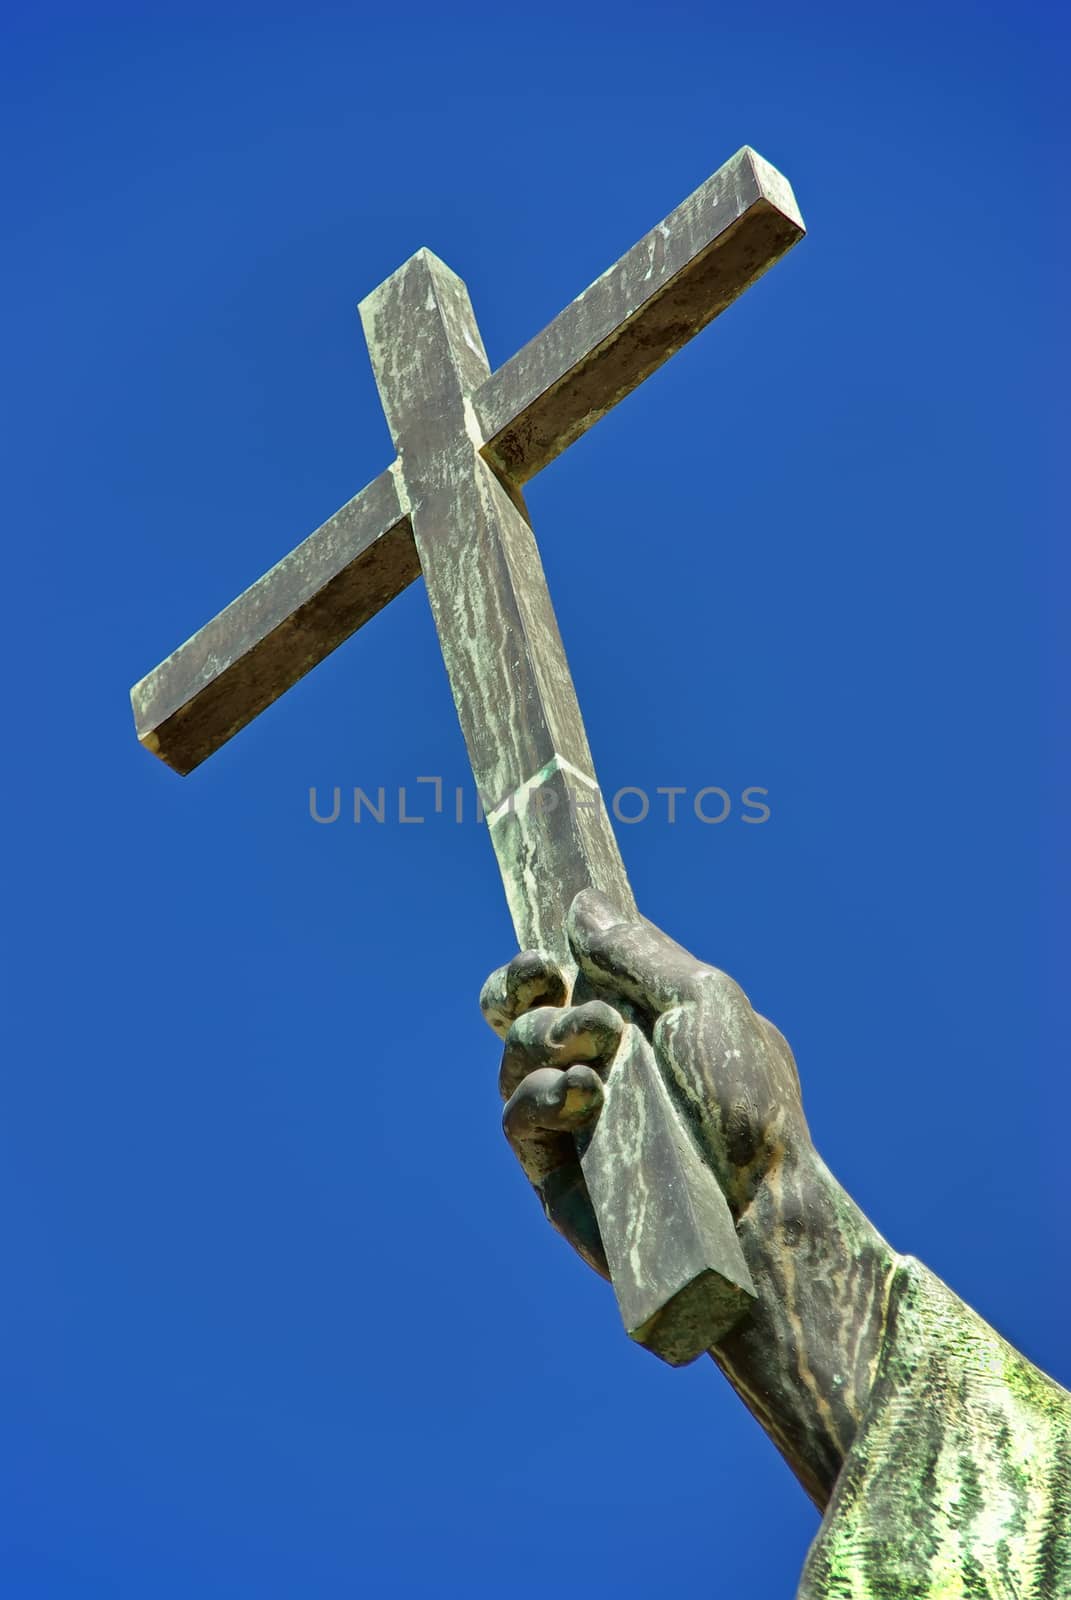 Cross by JCVSTOCK